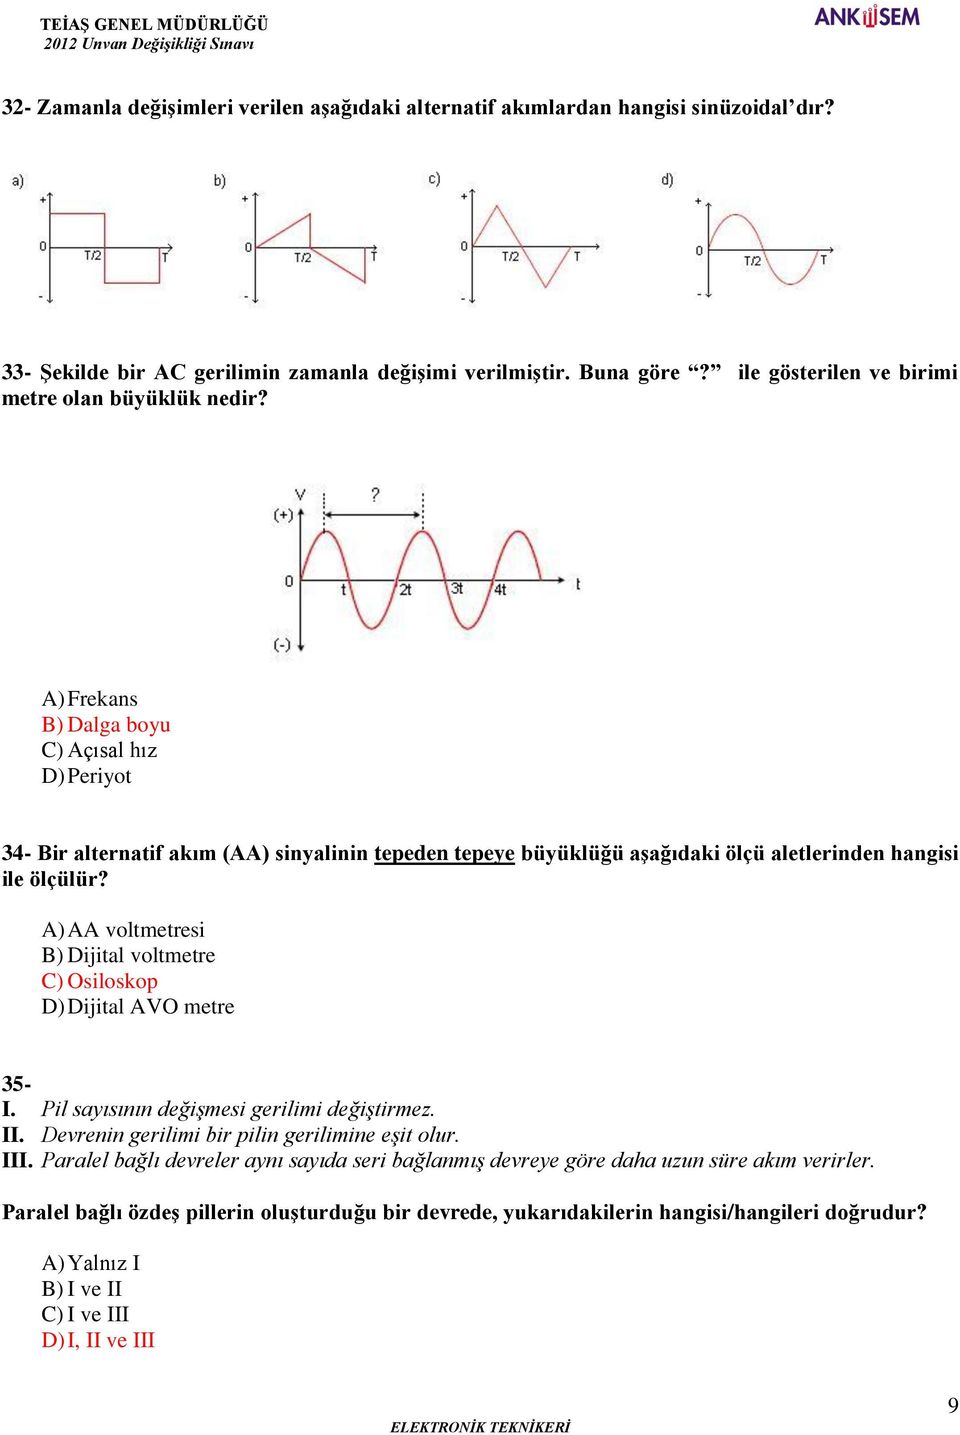 A) Frekans B) Dalga boyu C) Açısal hız D) Periyot 34- Bir alternatif akım (AA) sinyalinin tepeden tepeye büyüklüğü aşağıdaki ölçü aletlerinden hangisi ile ölçülür?